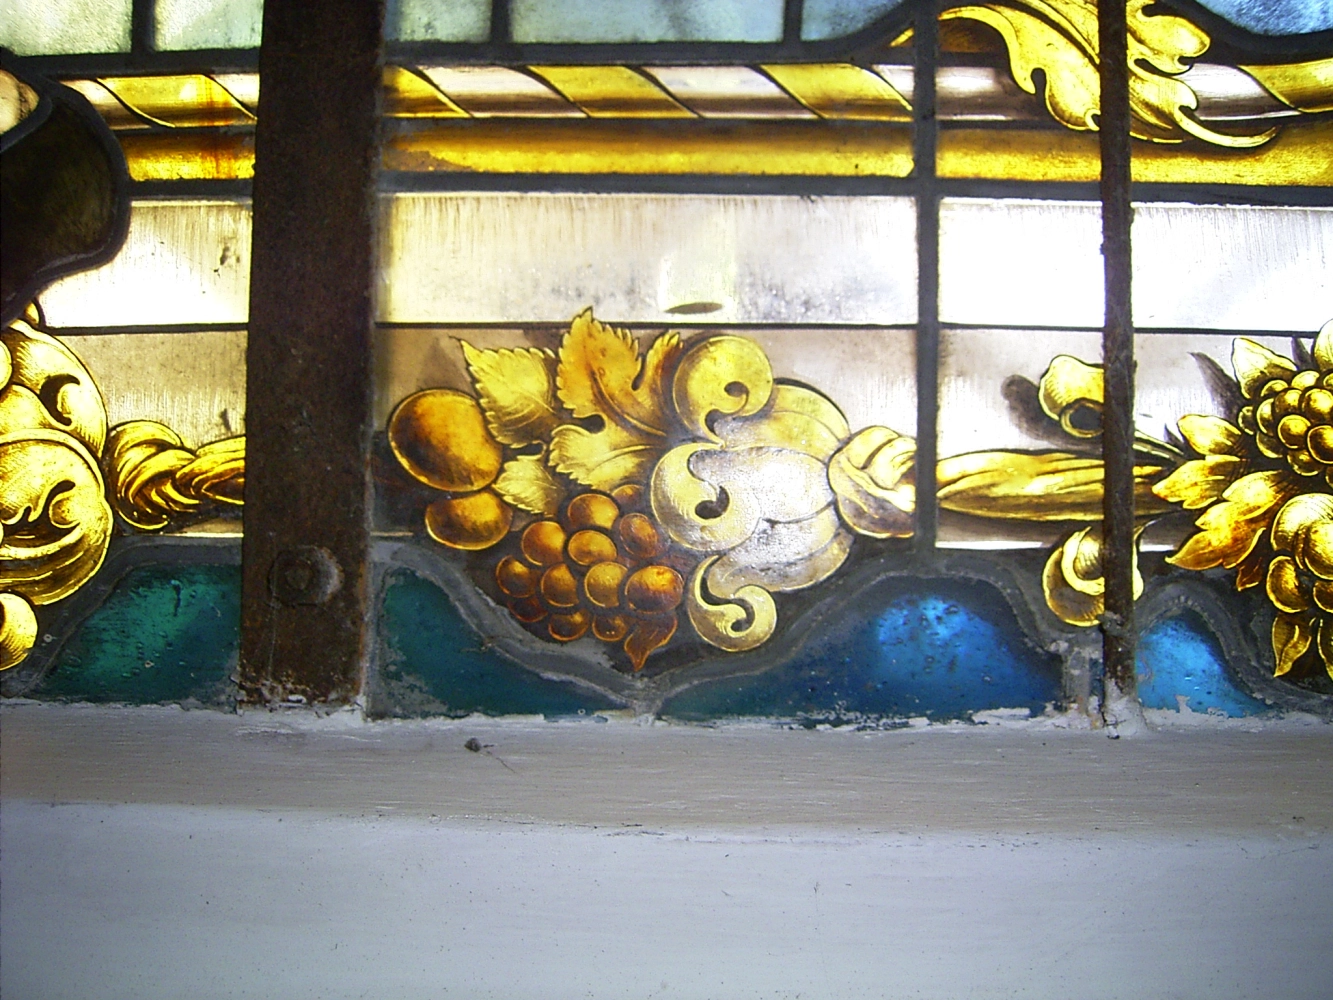 Kirchenfenster - Glaserei Karner GbR